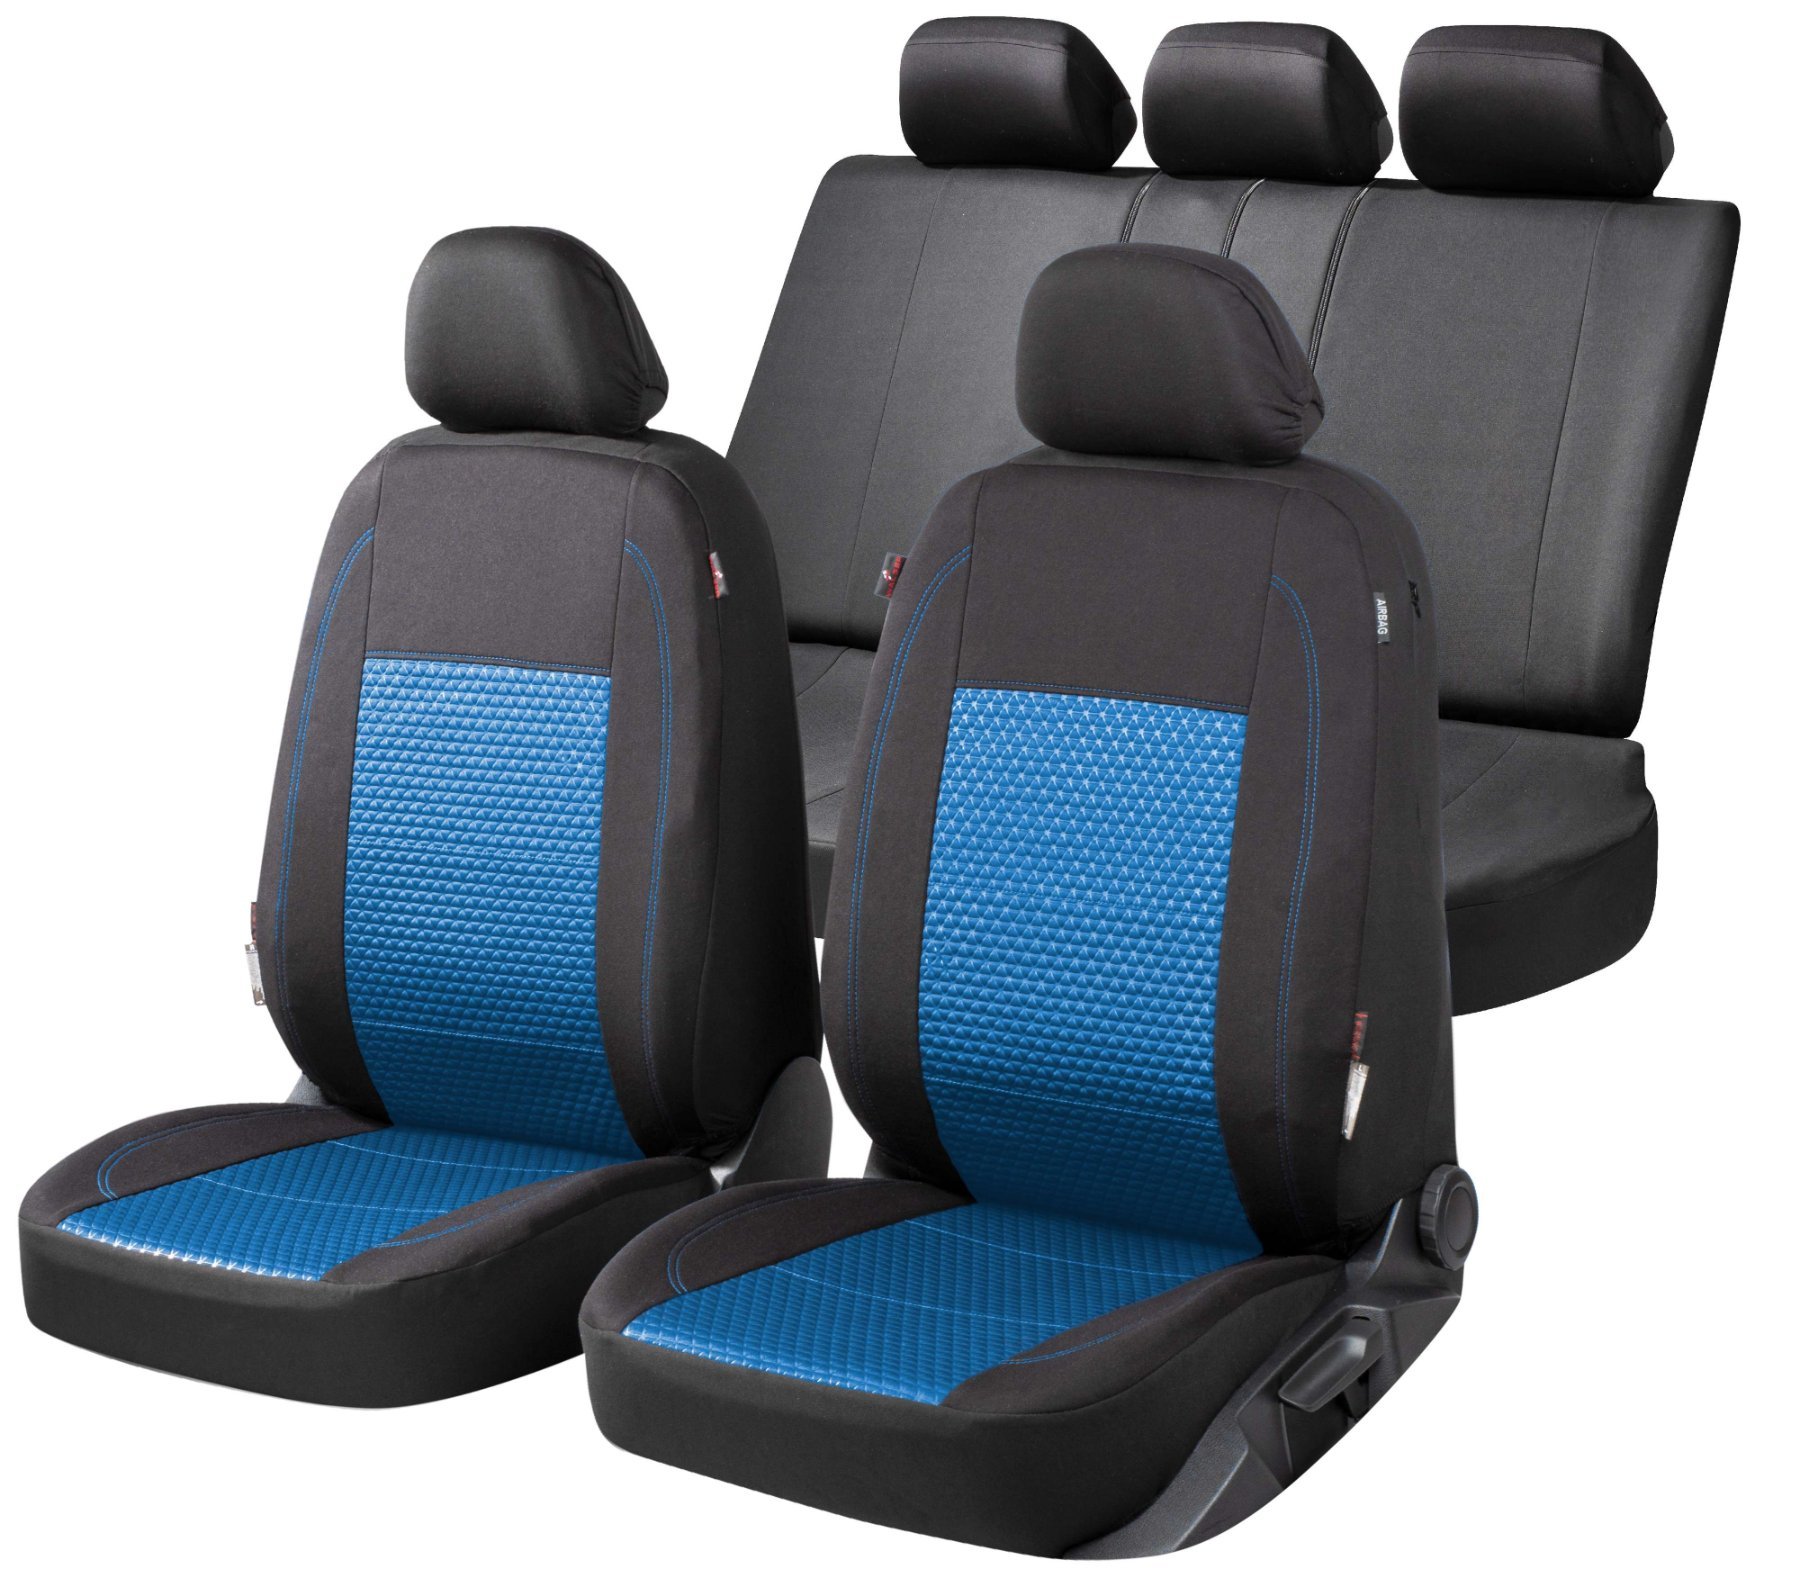 Premium Autostoelbekleding Avignon met Zipper ZIPP-IT, Autostoelhoes set, 2 stoelbeschermer voor voorstoel, 1 stoelbeschermer voor achterbank zwart/blauw